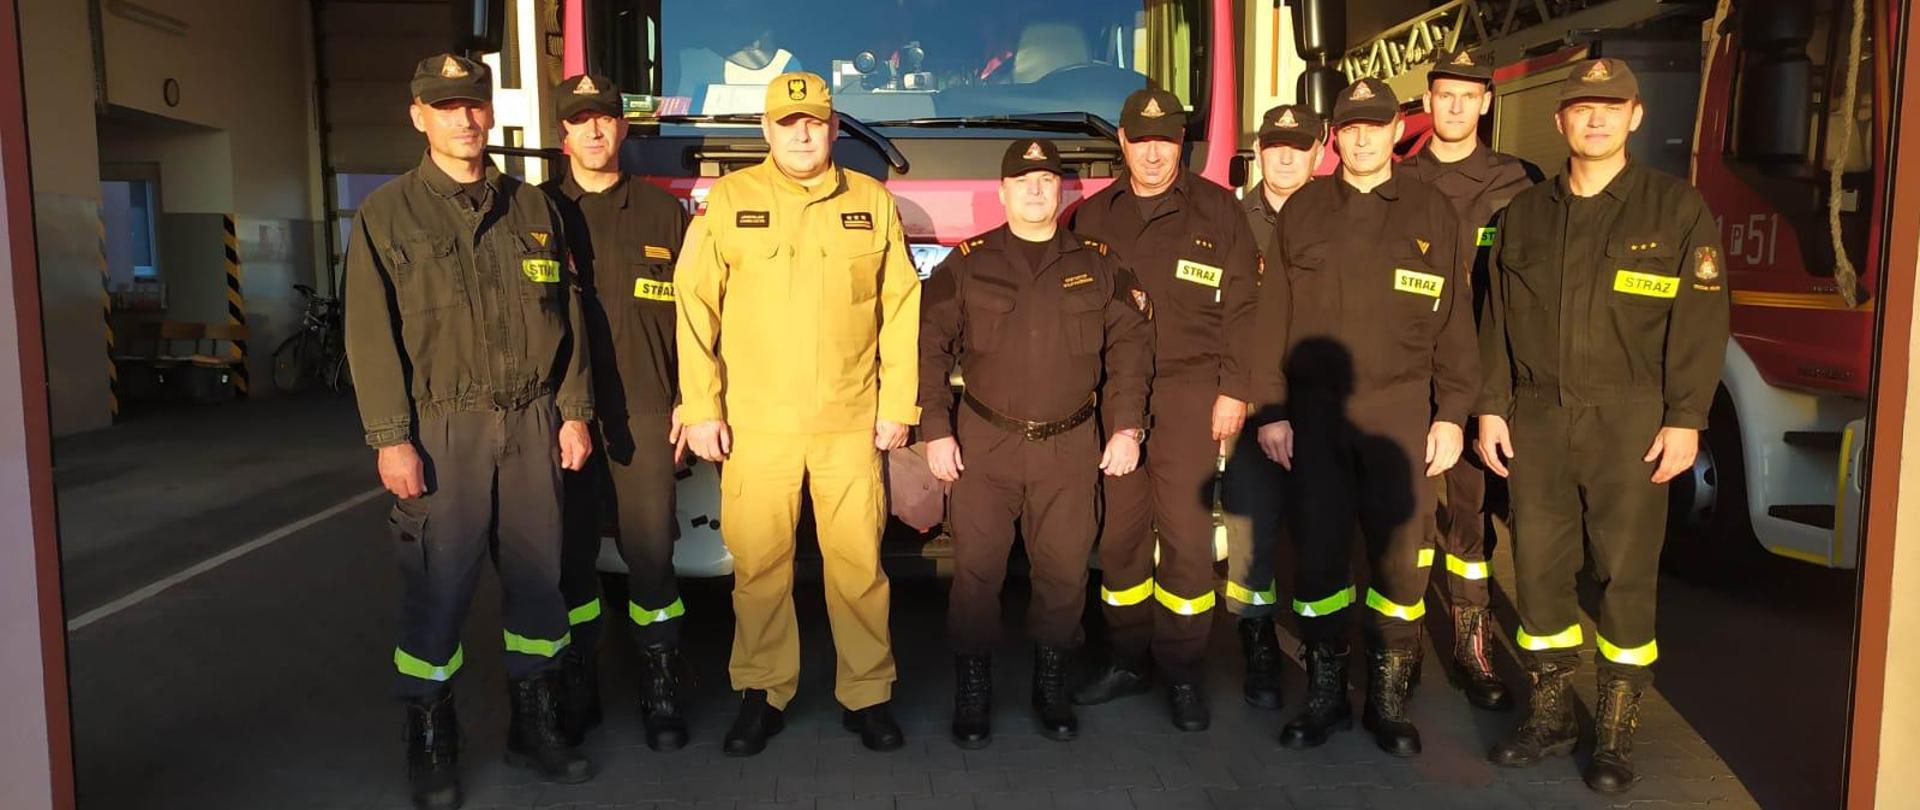 grupa strażaków w mundurach i czapeczkach dtoi przed samochodem pożarniczym